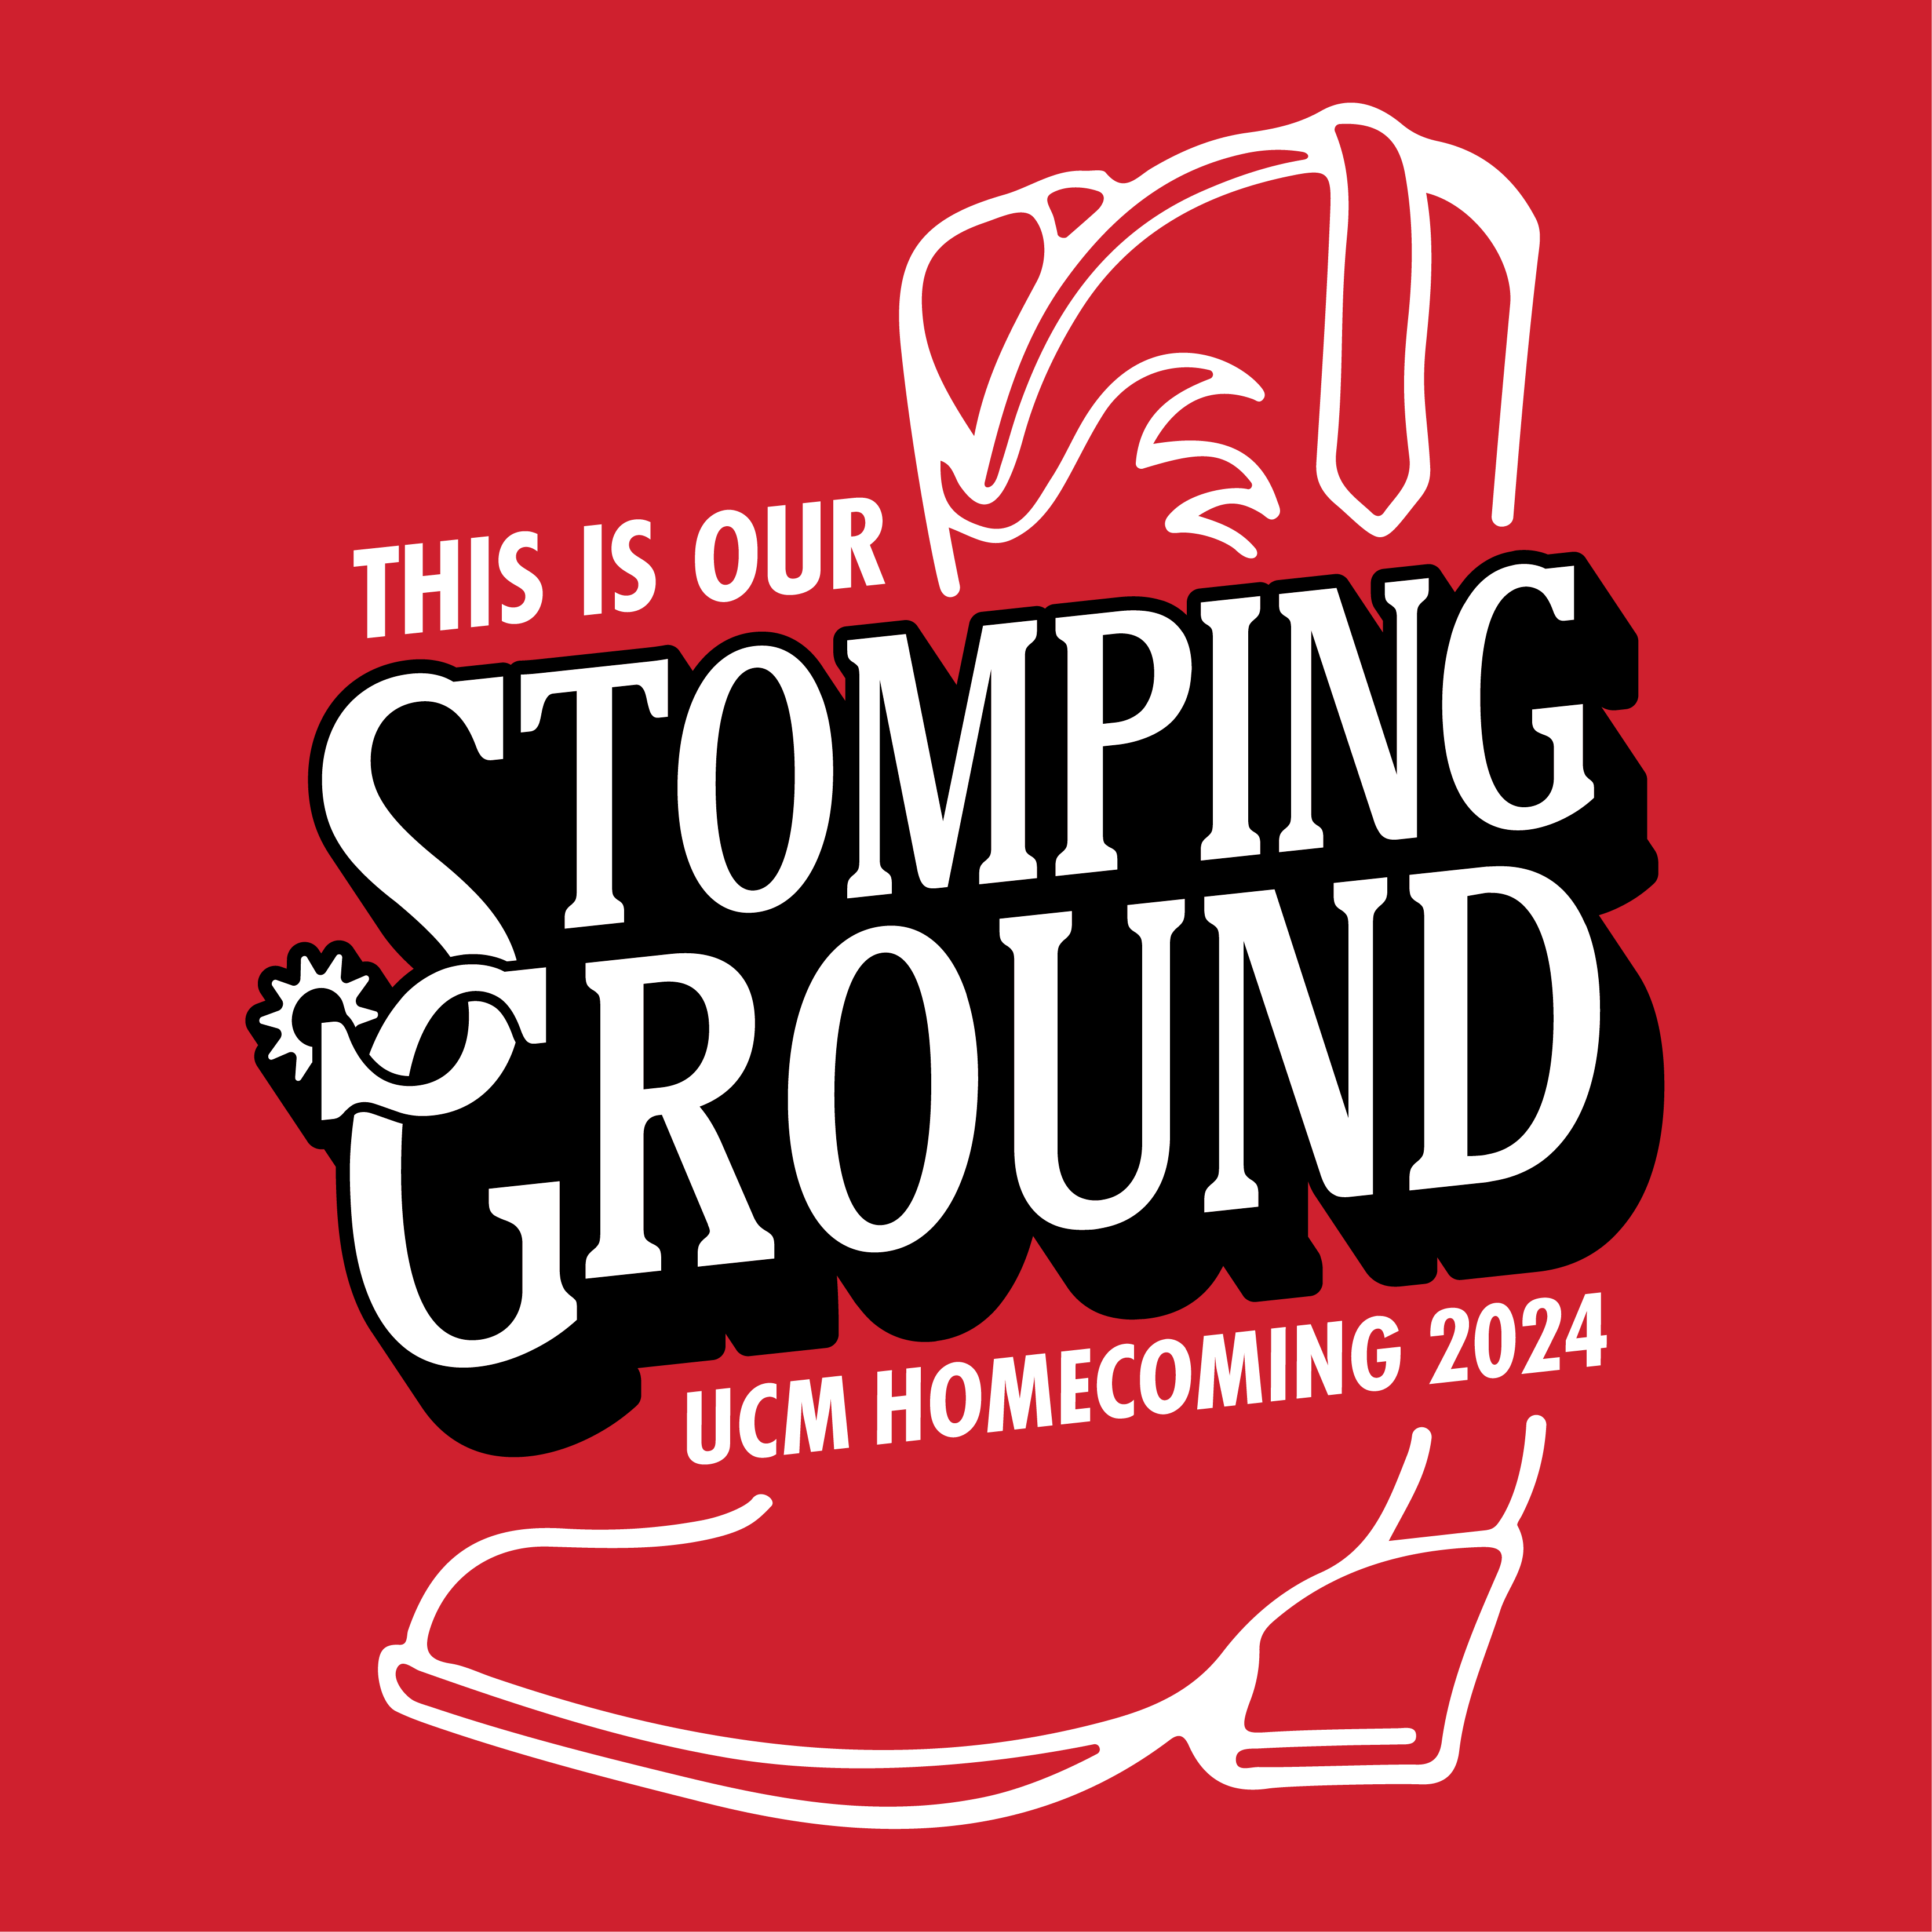 Homecoming 2024 logo